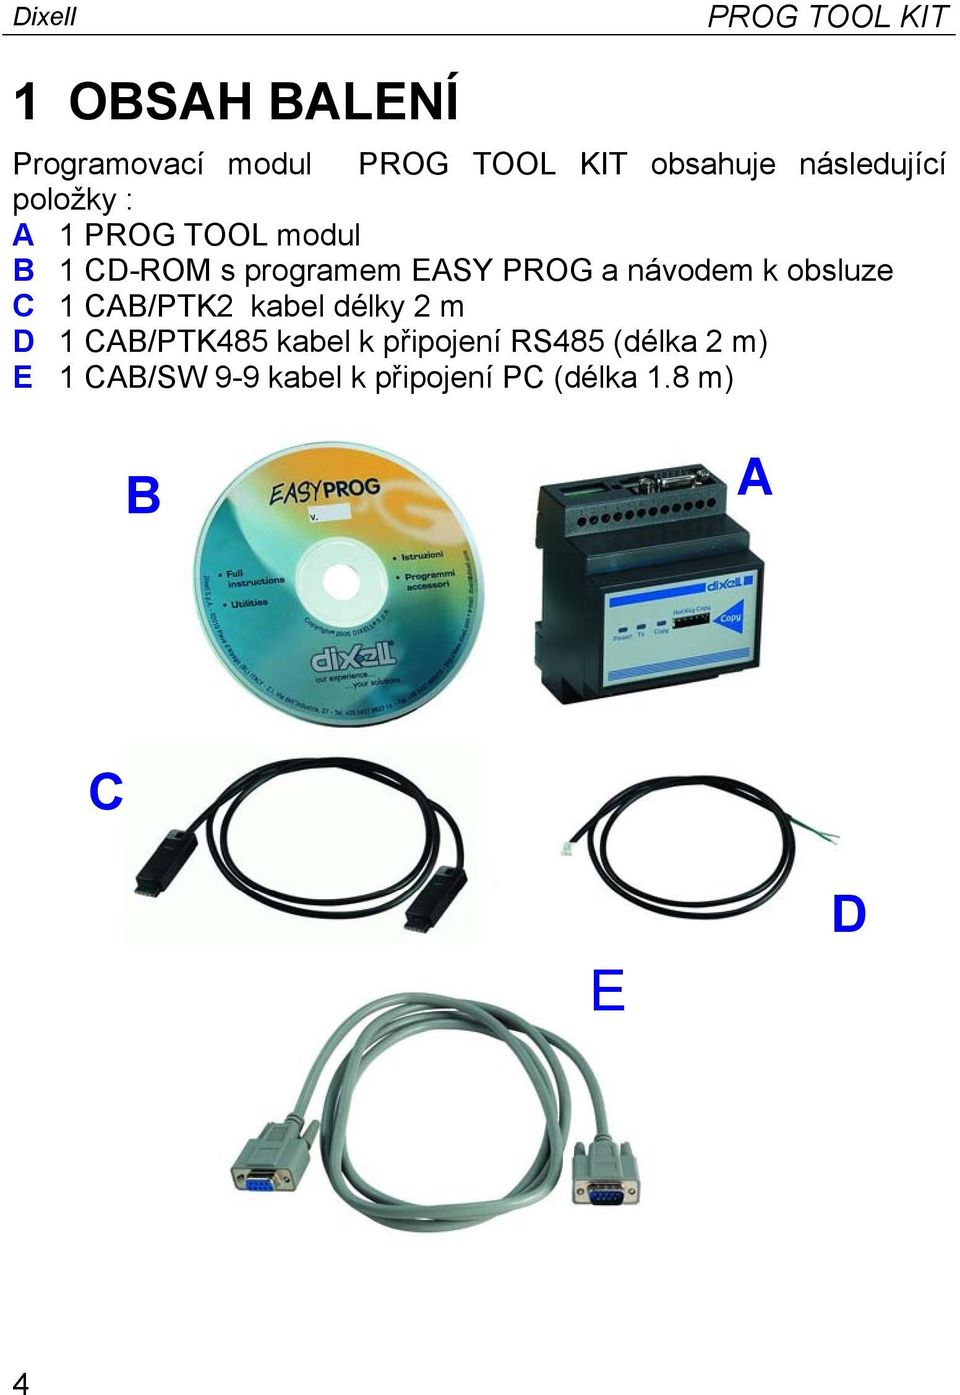 návodem k obsluze C 1 CAB/PTK2 kabel délky 2 m D 1 CAB/PTK485 kabel k